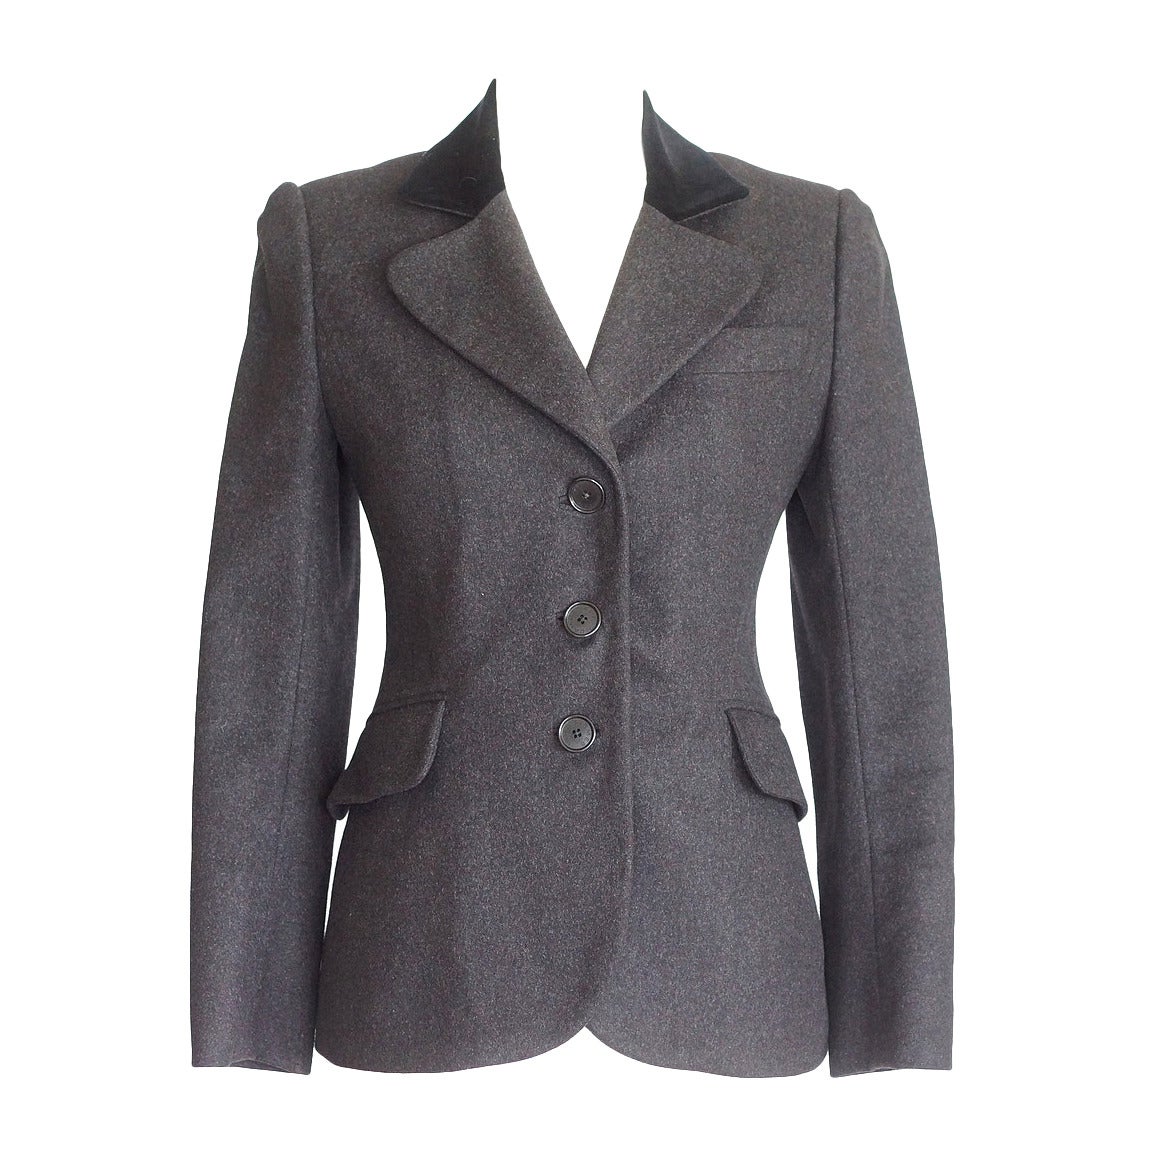 Hermes Jacket Charcoal Gray Cashmere Rear Dtl Velvet Collar Vintage 38 ...